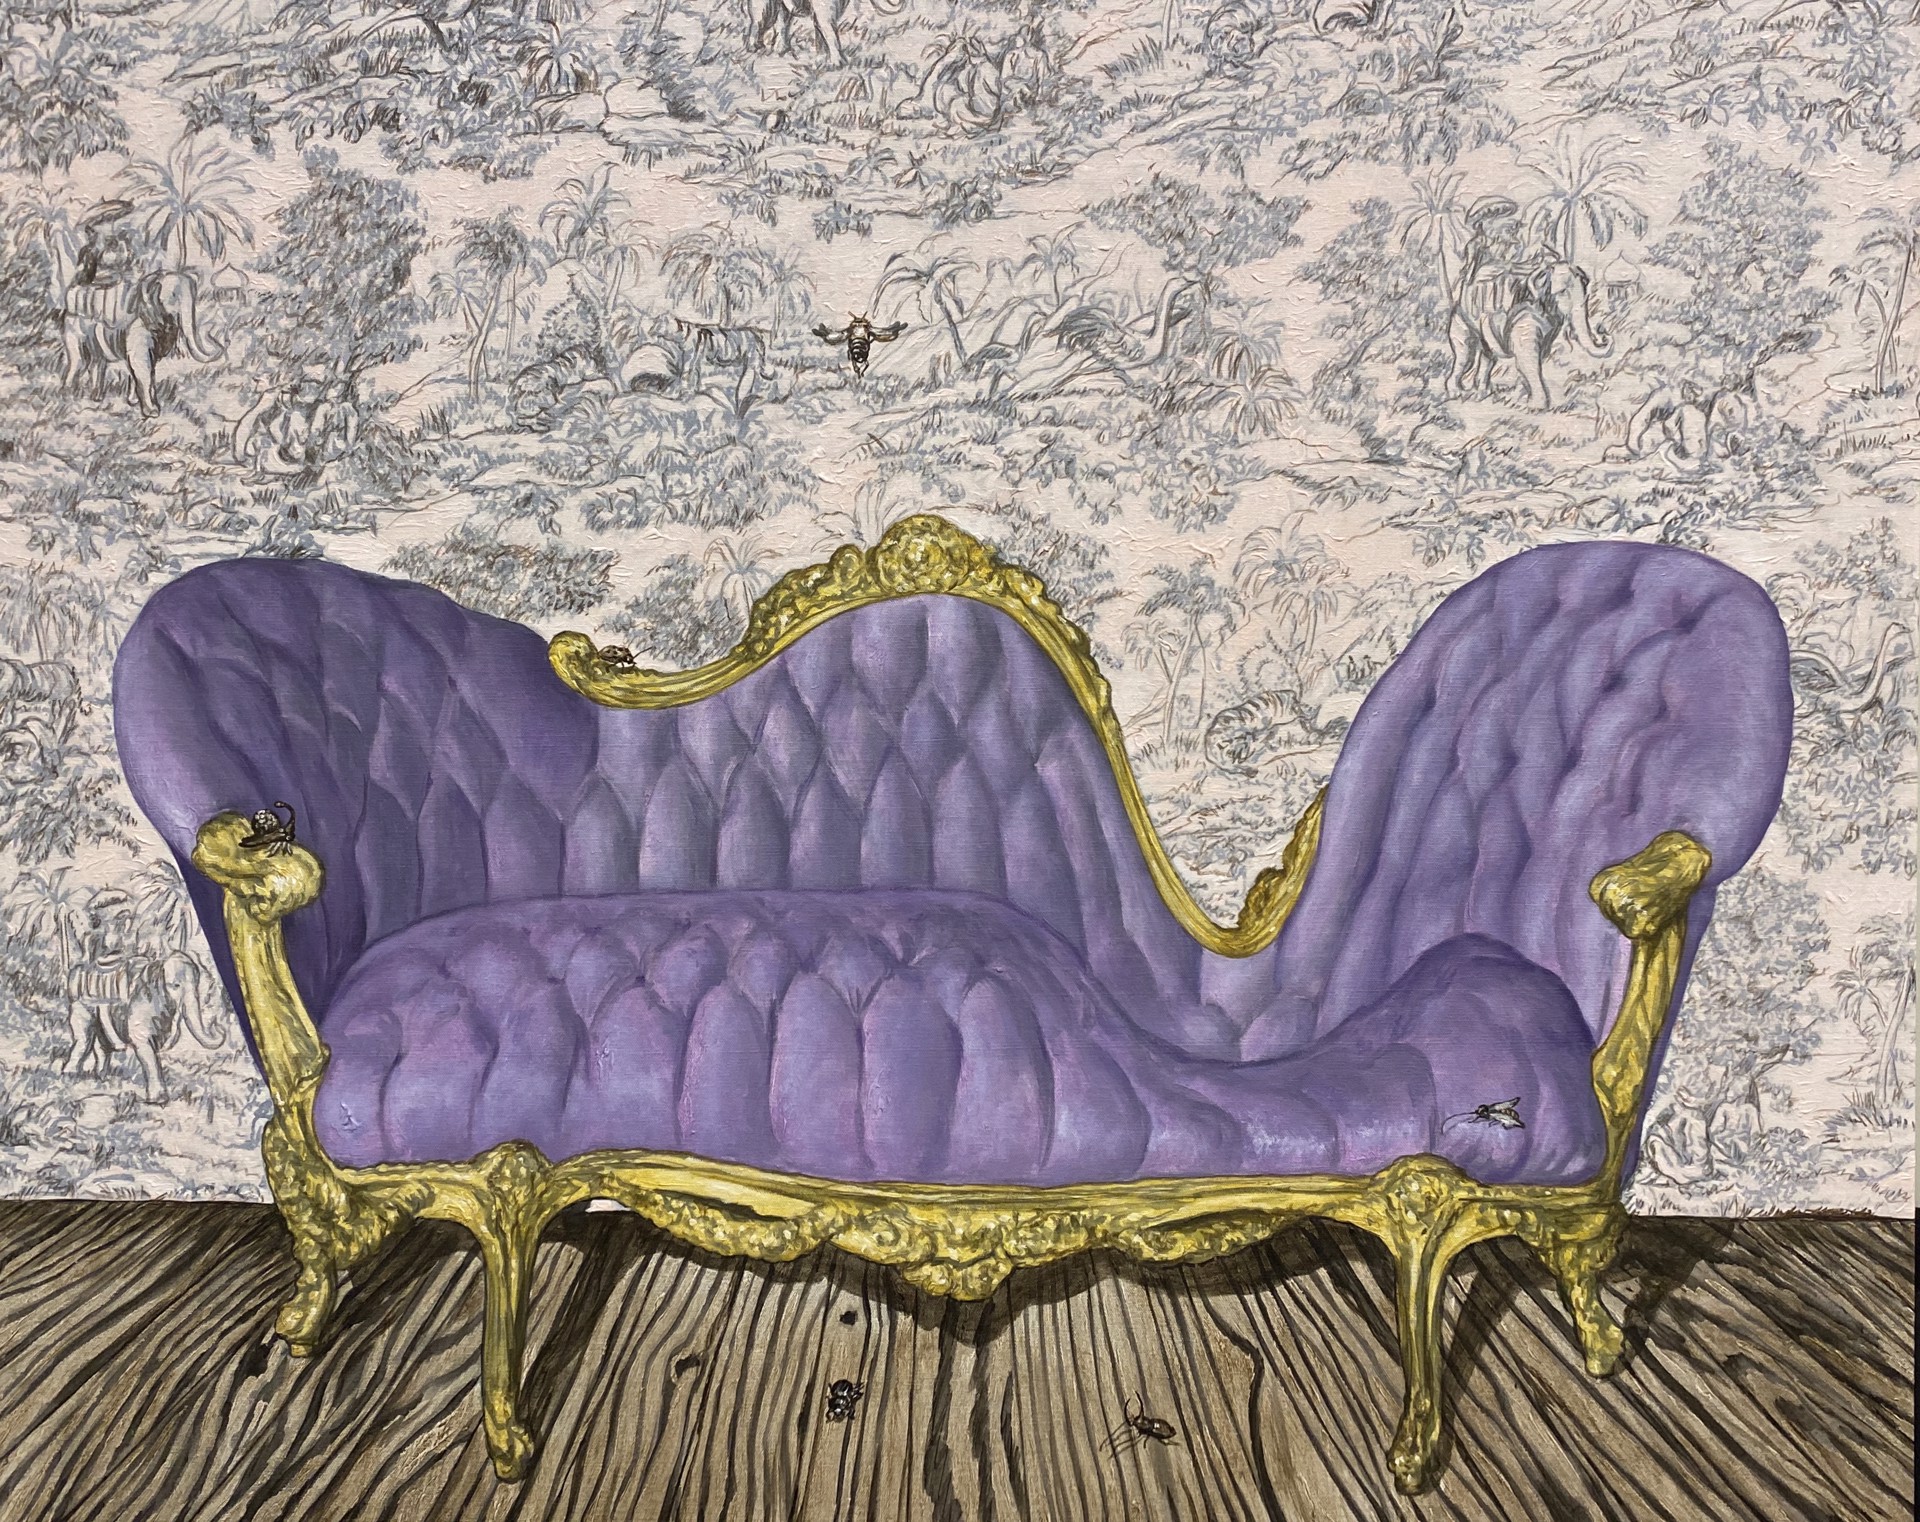 Lavender Furniture by Carlos Gamez de Francisco